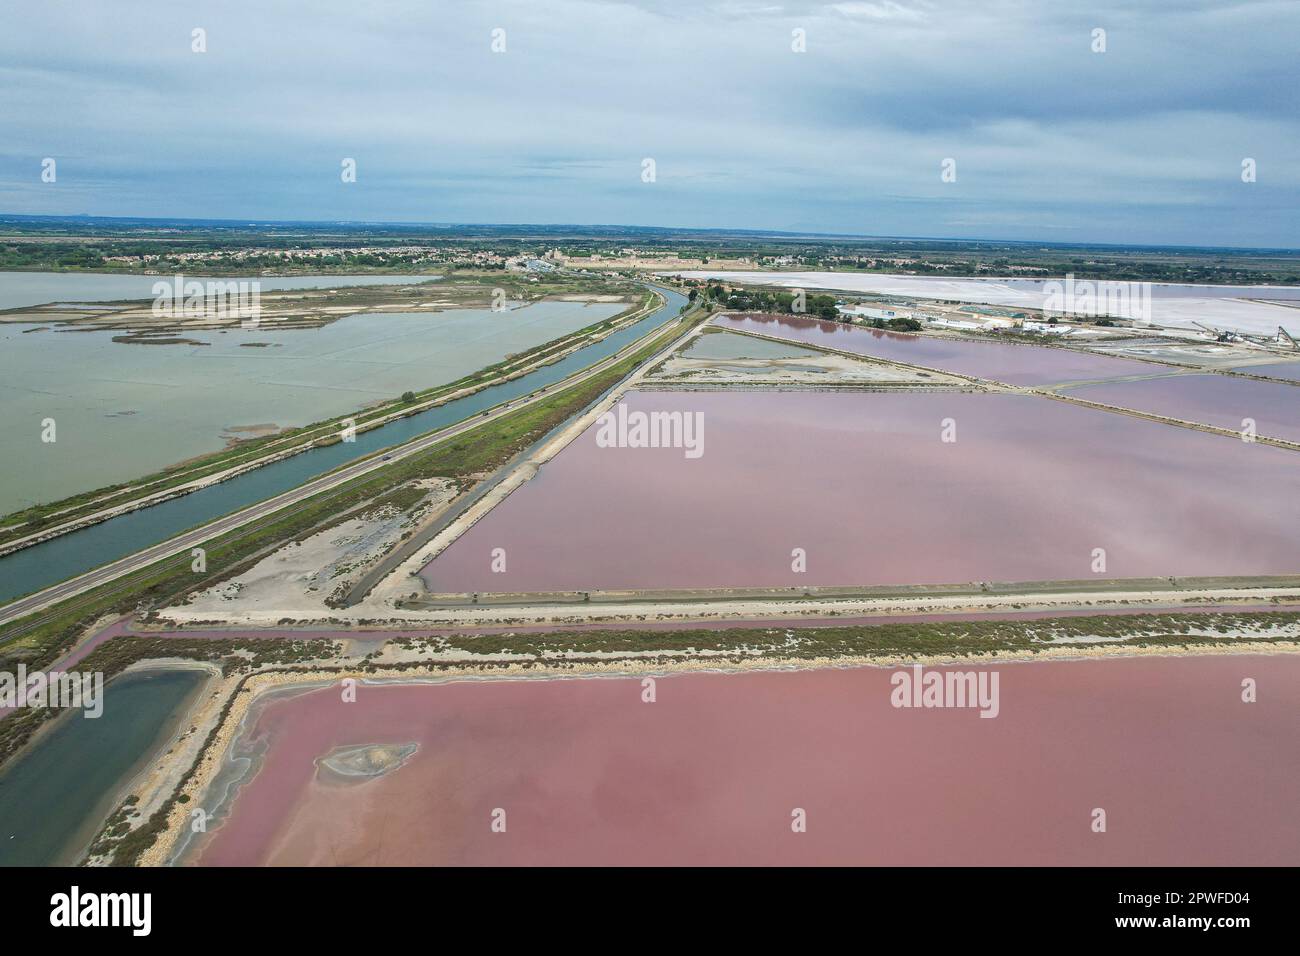 Le sel rose d'Aigues mortes : un paysage surnaturel en Camargue. Les saltworks de couleur rose qui lui donnent une toute nouvelle dimension. En effet, si l'eau des marais d'Aigues mortes a la particularité d'être rose coloré, cela est dû à la présence d'une micro-algue, Dunaliella Salina, qui prolifère dans les eaux avec une très forte concentration de sel. En plus de ses propriétés antioxydantes, cette algue est très riche en bêta-carotène, un pigment rouge qui donne à l'eau sa teinte rose incroyable. Camargue, France, sur 27 avril 2023. Photo de Lionel Urman/ABACAPRESS.COM Banque D'Images